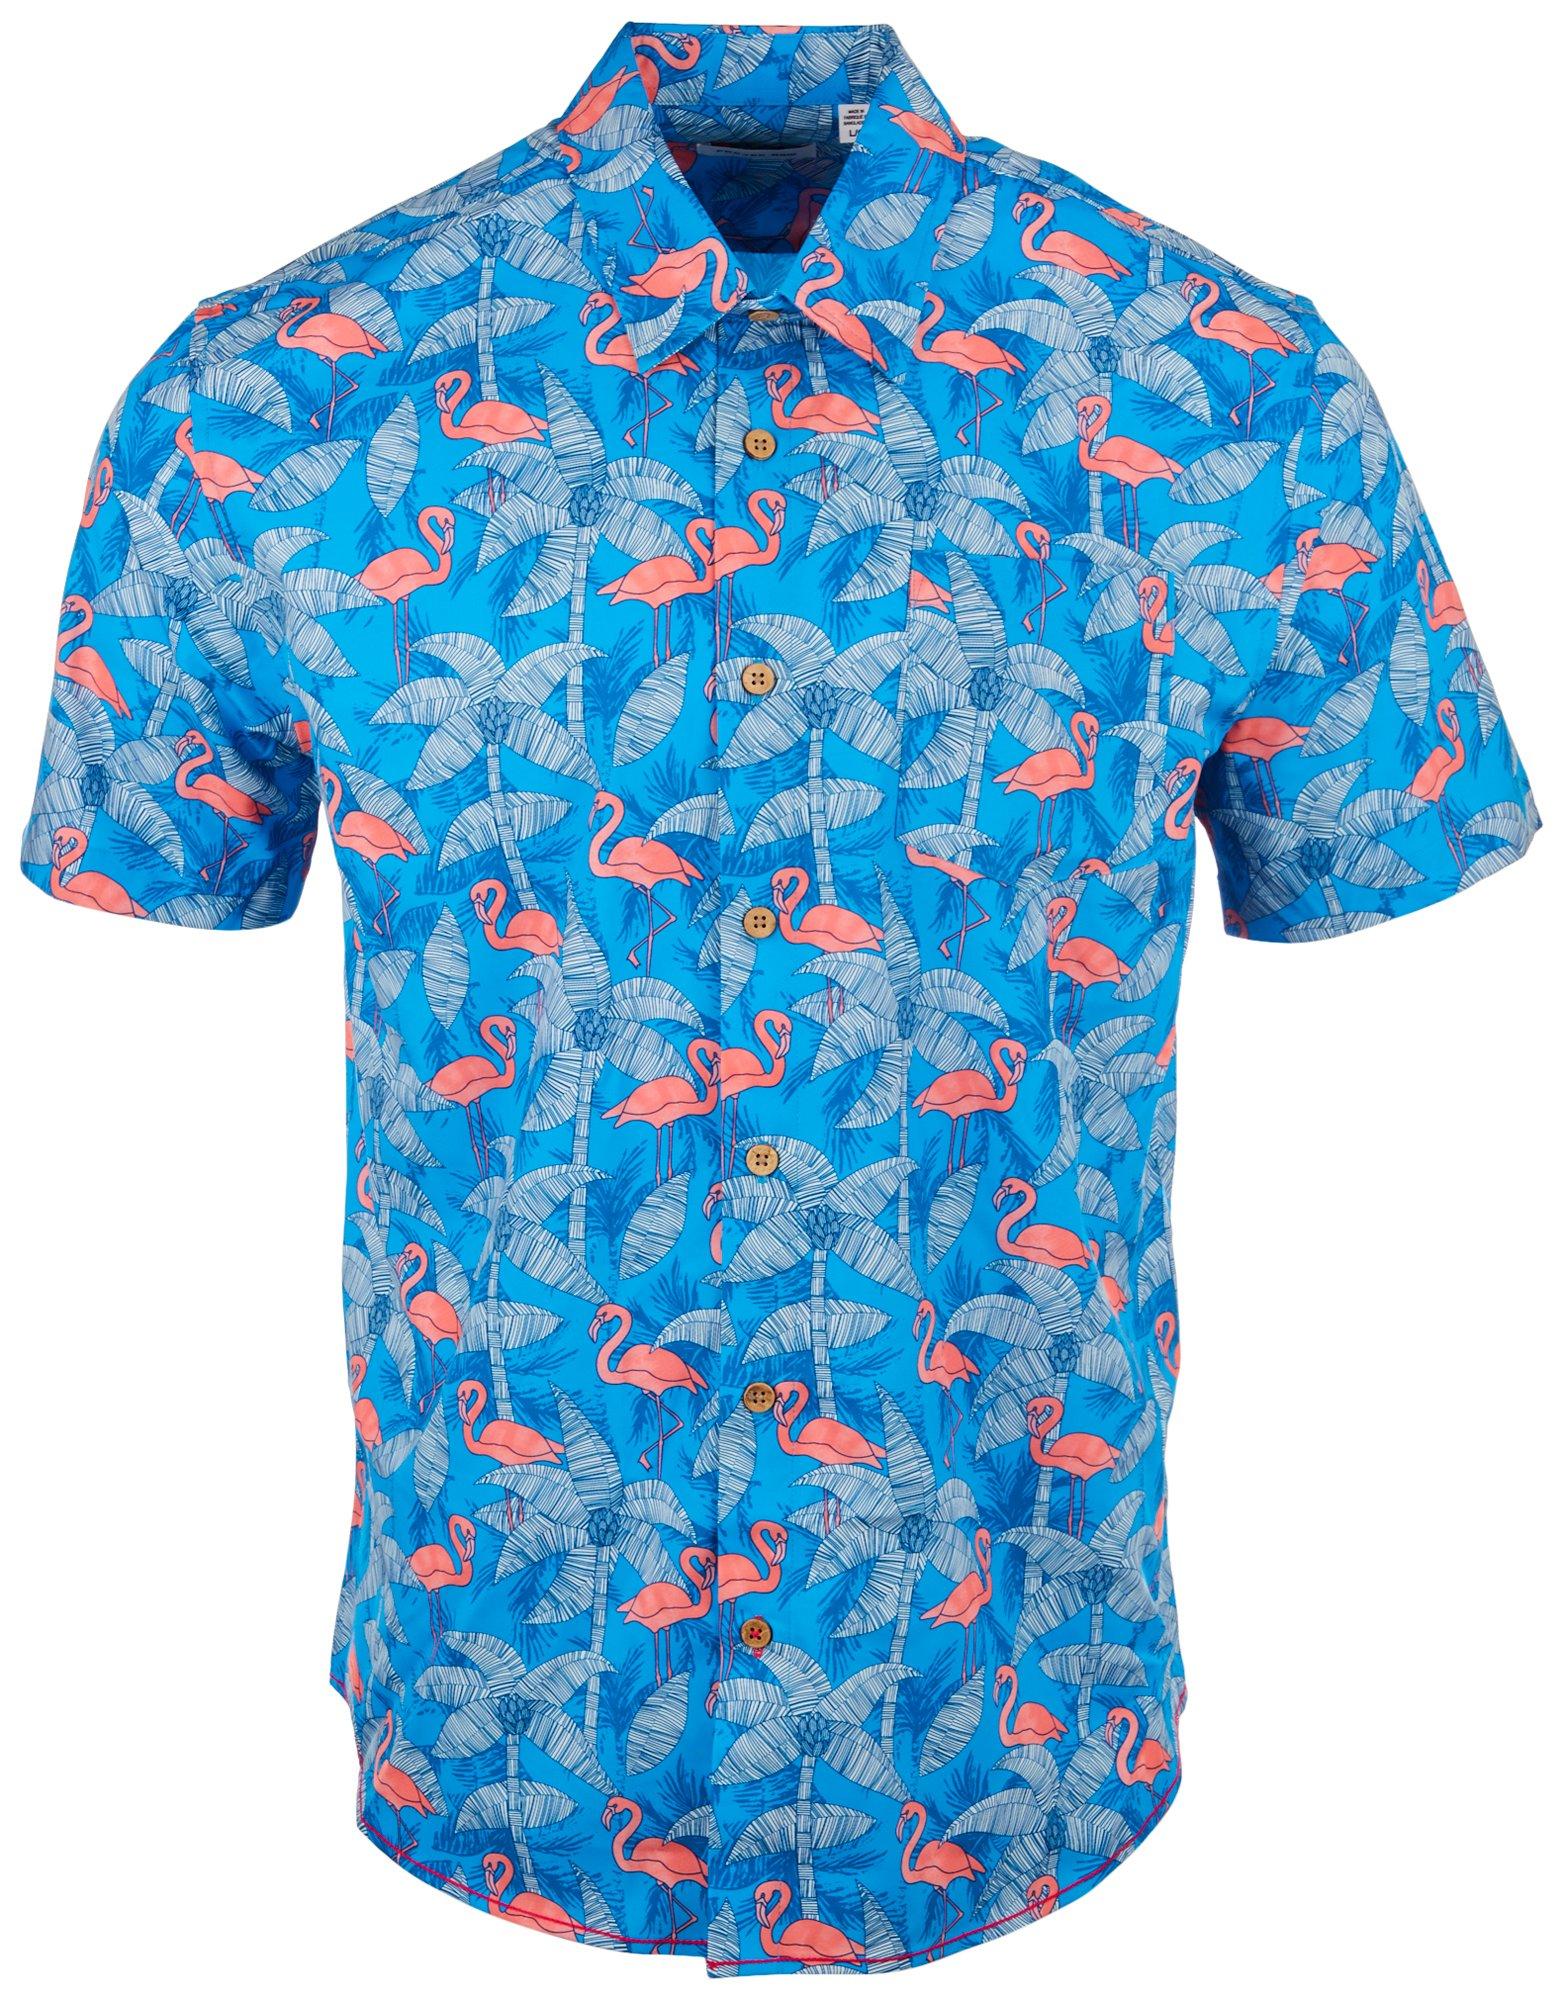 PROJEK RAW Mens Tropical Flamingo Short Sleeve Shirt